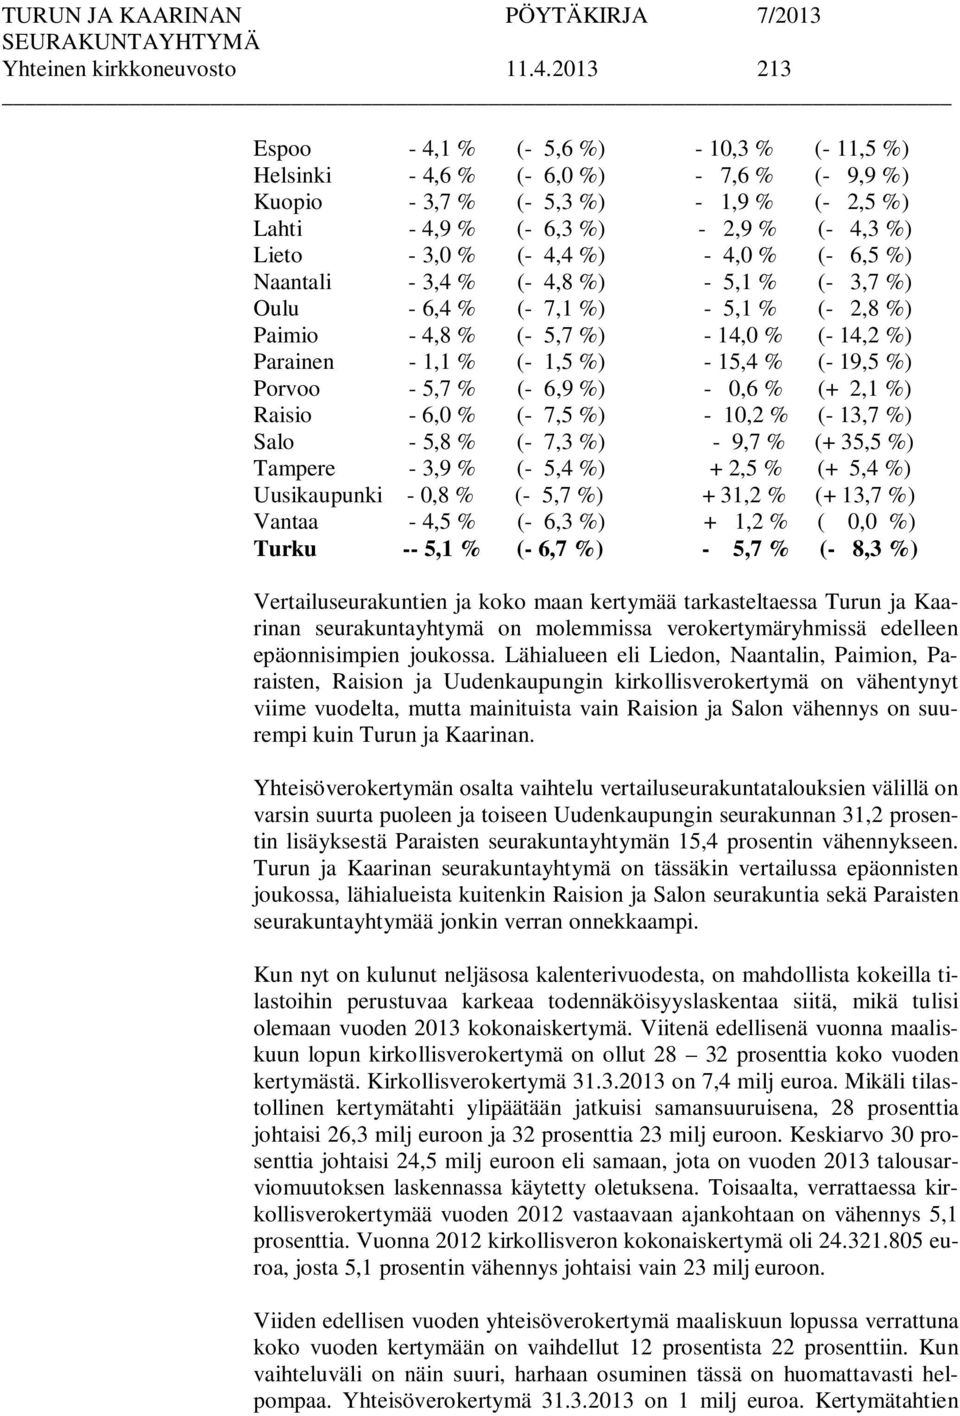 4,4 %) - 4,0 % (- 6,5 %) Naantali - 3,4 % (- 4,8 %) - 5,1 % (- 3,7 %) Oulu - 6,4 % (- 7,1 %) - 5,1 % (- 2,8 %) Paimio - 4,8 % (- 5,7 %) - 14,0 % (- 14,2 %) Parainen - 1,1 % (- 1,5 %) - 15,4 % (- 19,5